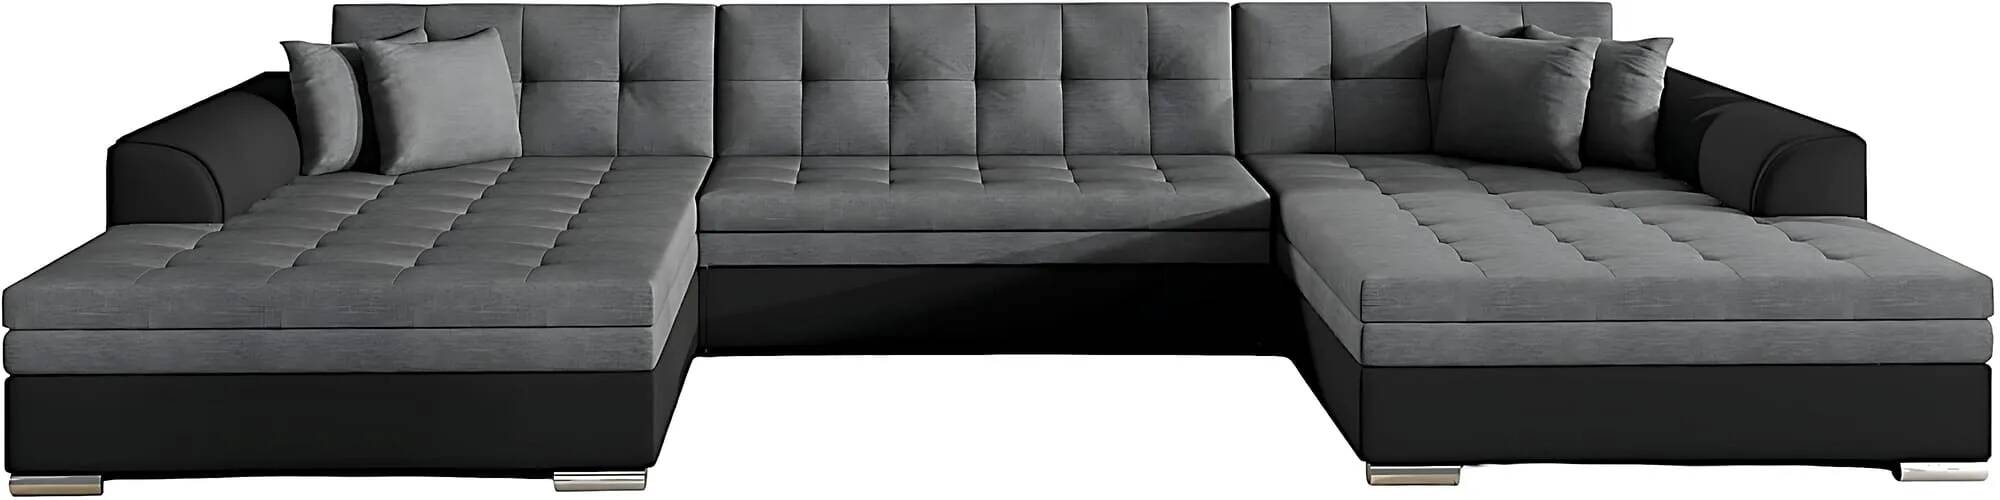 Canapé d'angle convertible en tissu gris foncé et simili cuir noir